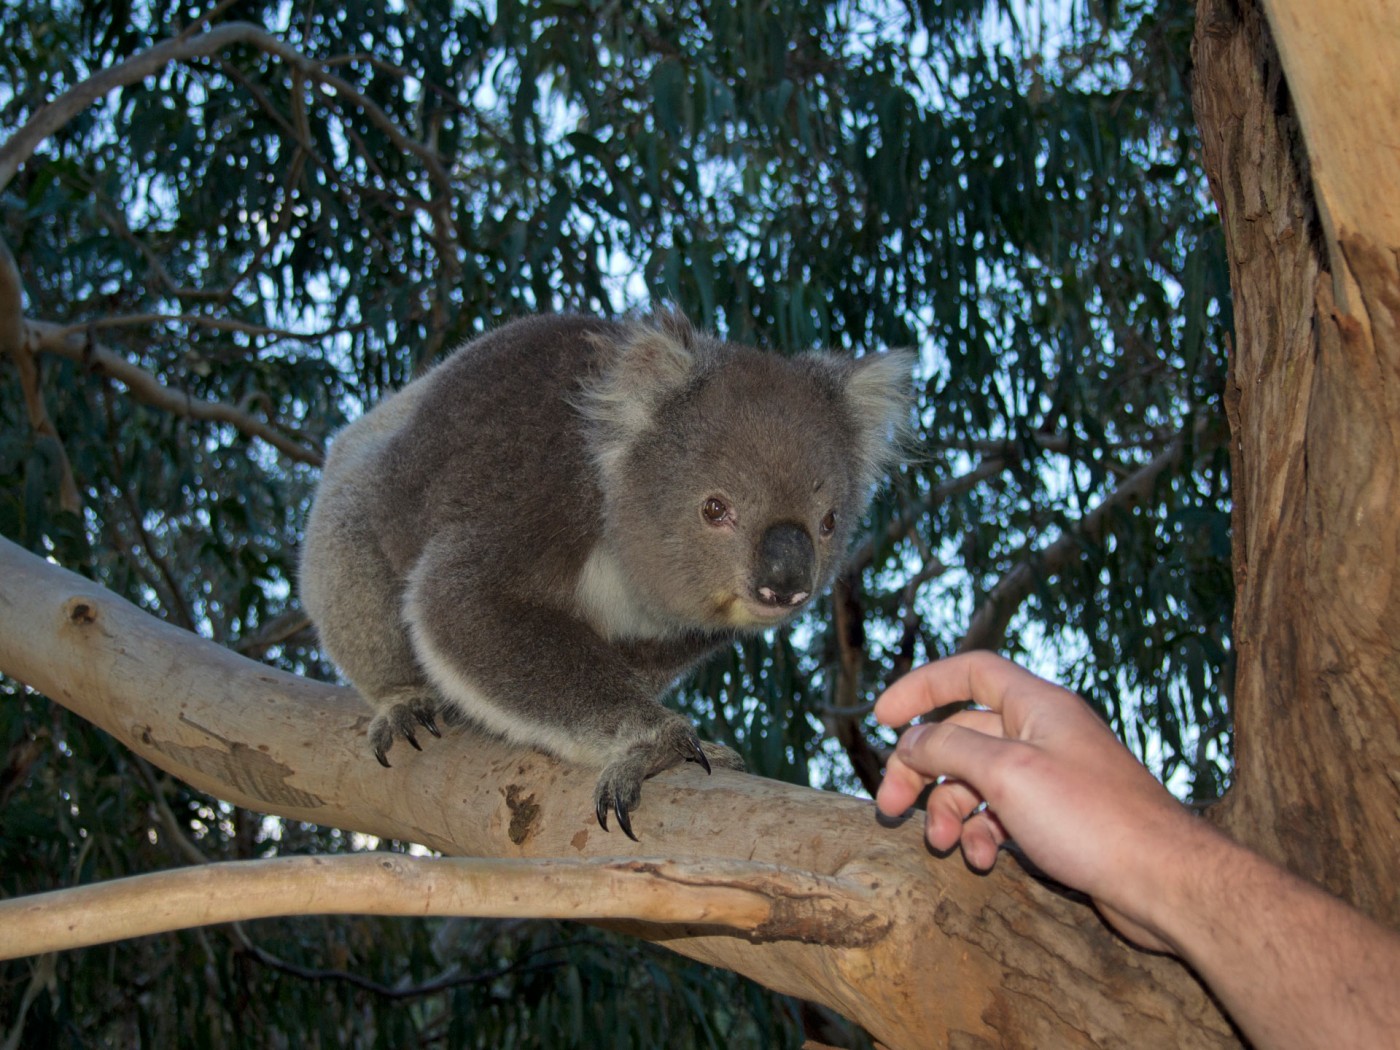 Koala at Kennett River, Great Ocean Road, Australia